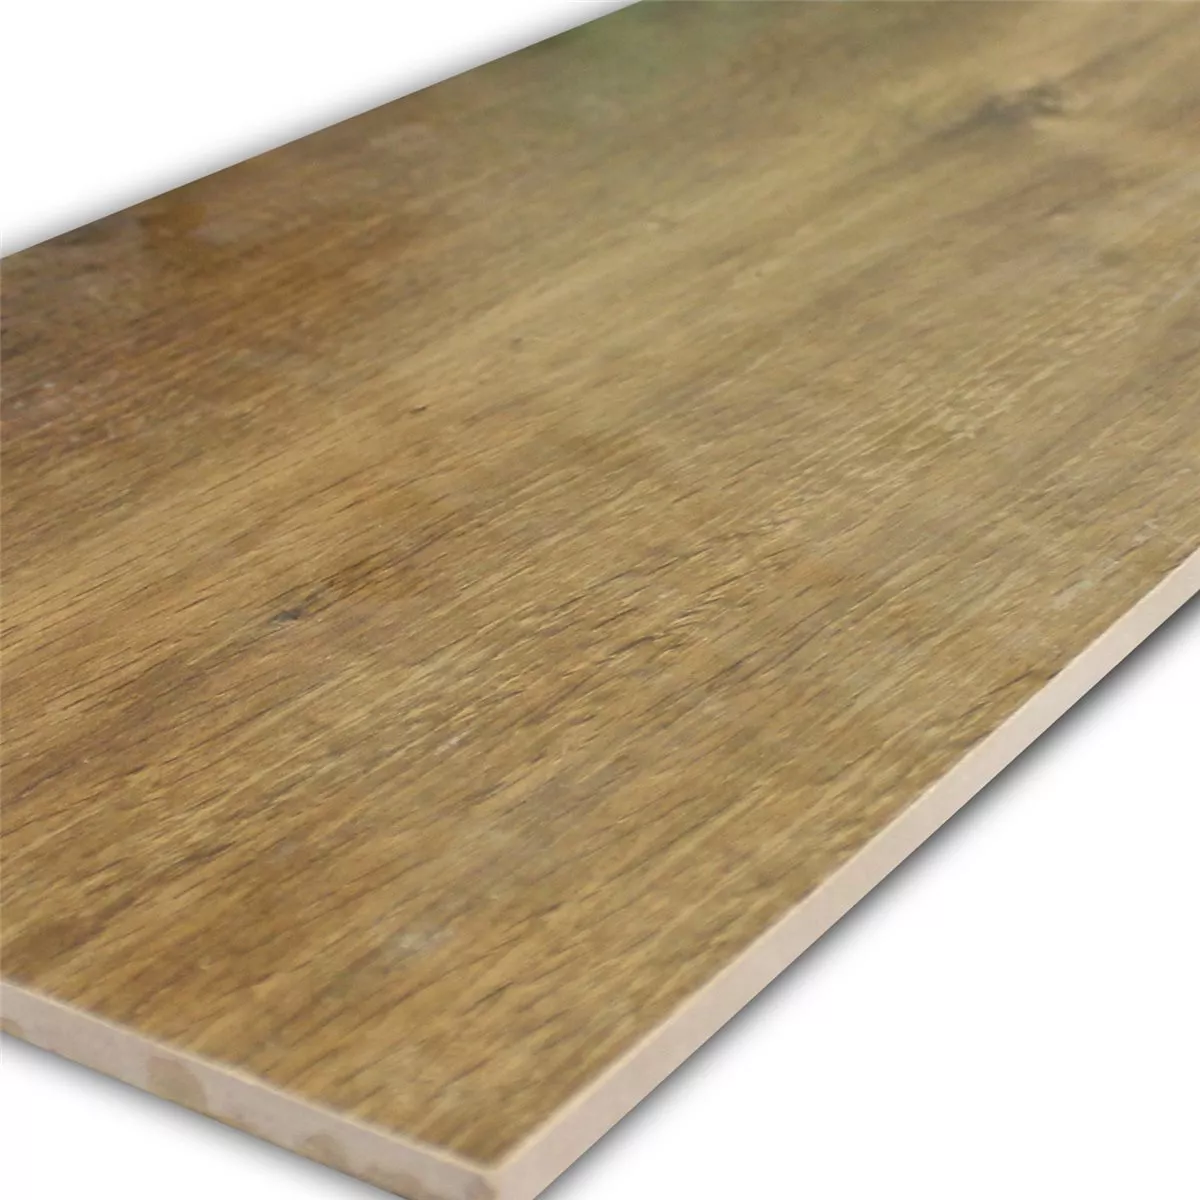 Marazzi TreverkHome Płytki Podłogowe Wygląd Drewna Querica Rett MJWM 30x120cm